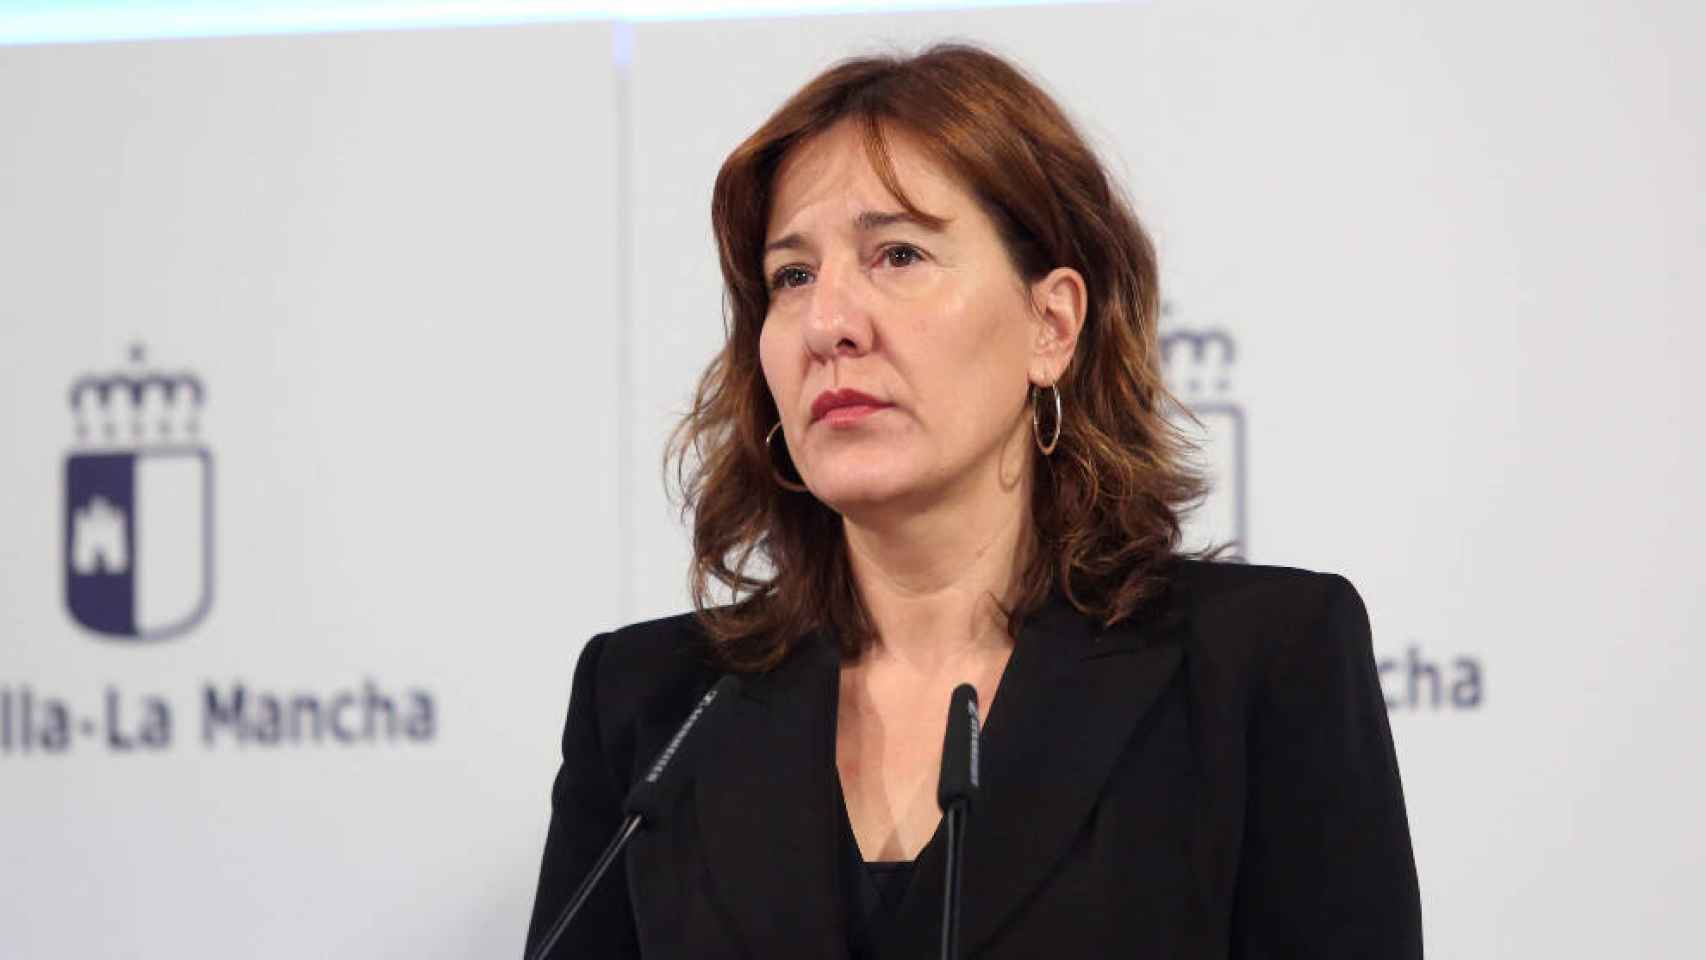 La consejera portavoz del Gobierno de Castilla-La Mancha, Blanca Fernández, en una imagen reciente